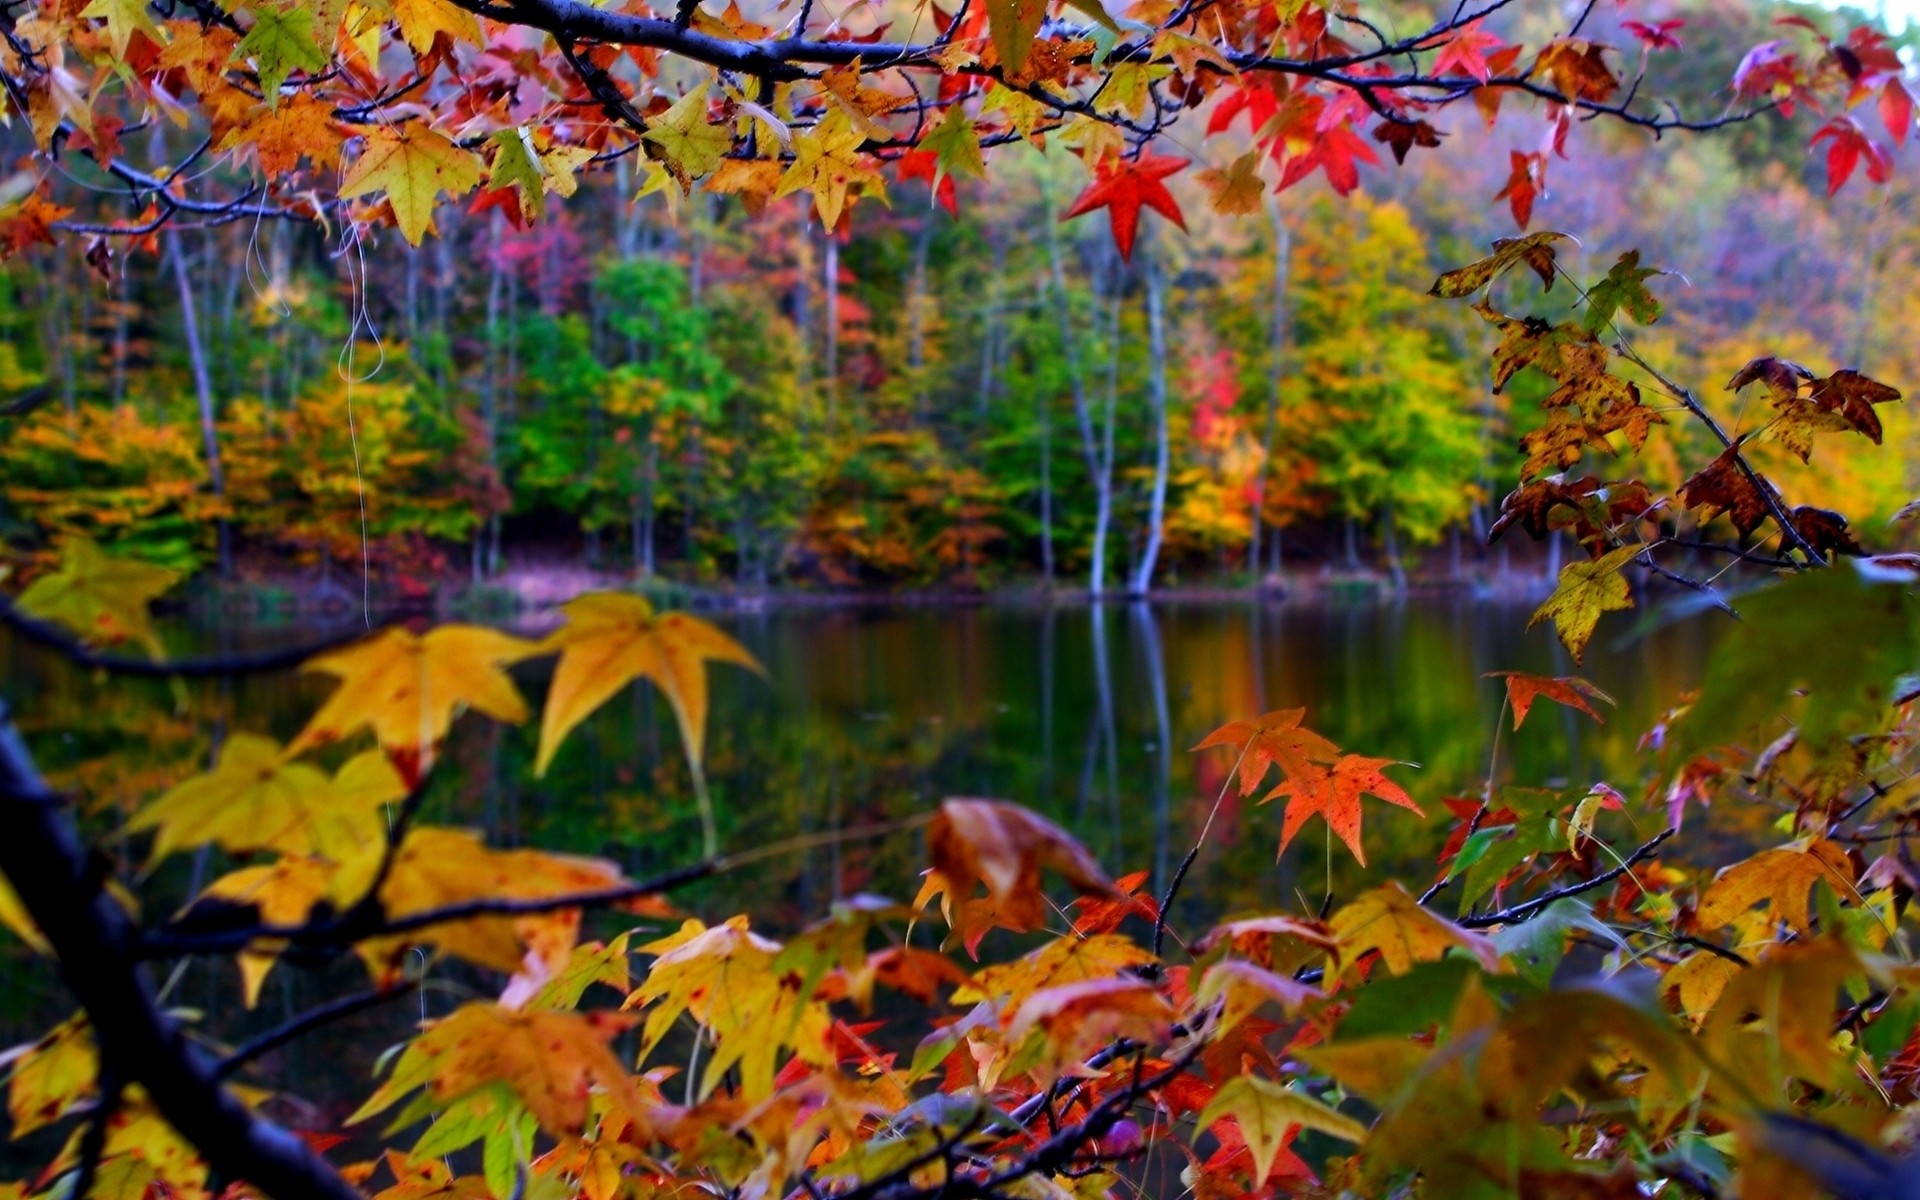 осень осень лист кленовый дерево сезон природа парк древесины яркий цвет филиал флора пышные яркие на открытом воздухе золото фон альбомный лист осенние листья падают